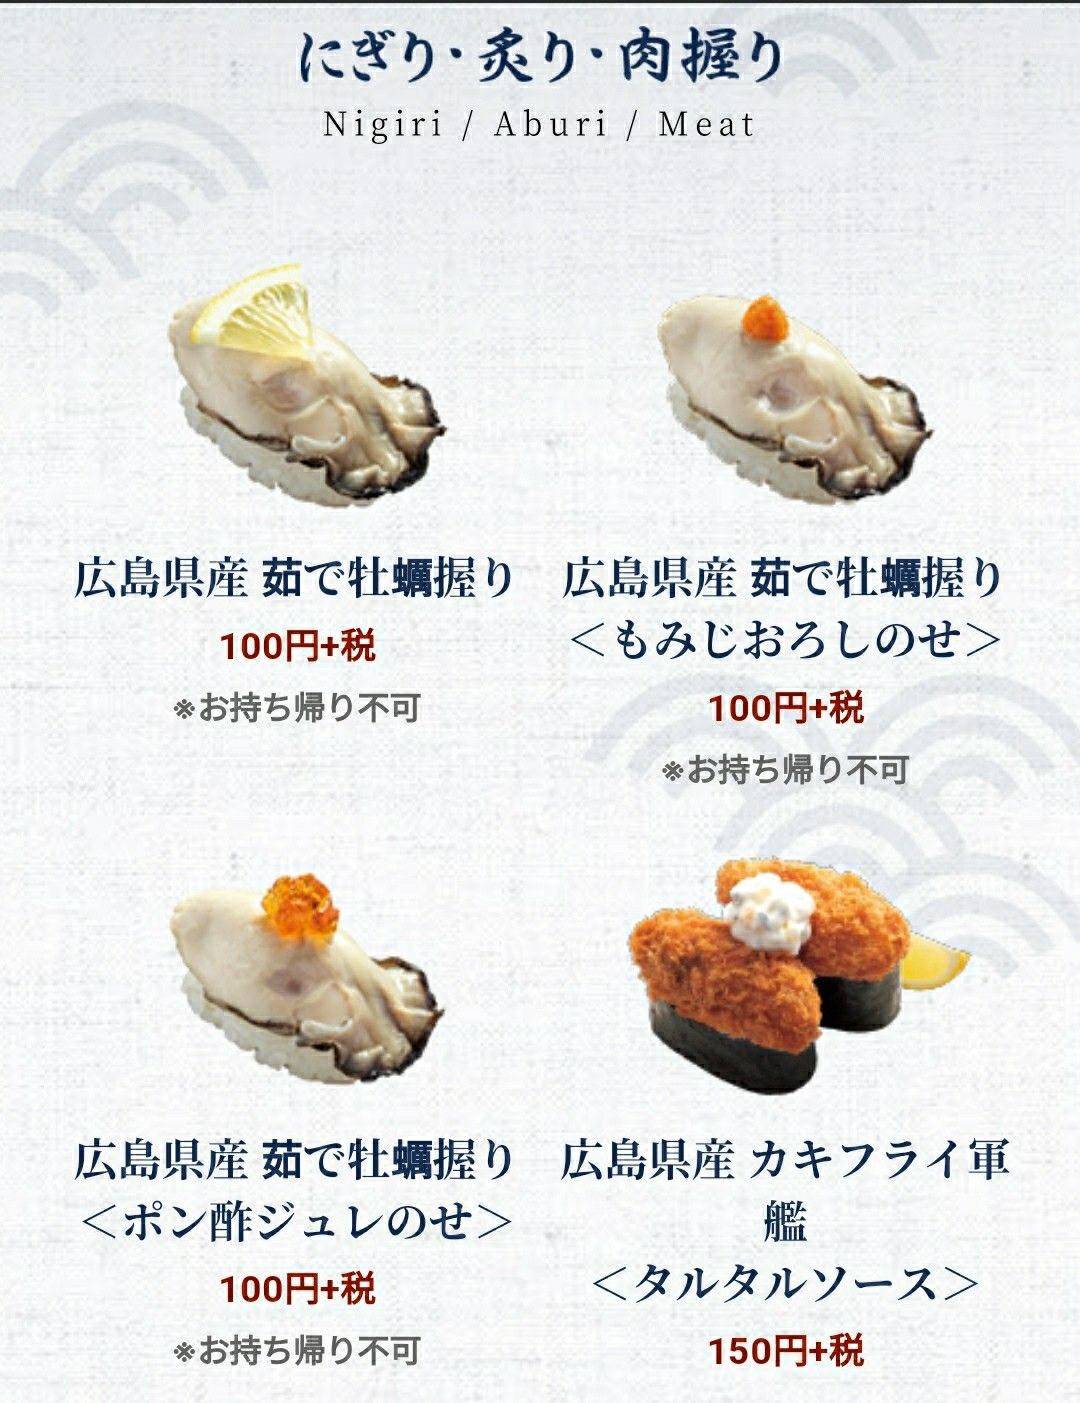 ちょっとつぶやき はま寿司で牡蠣まつり カキフライ丼 もおいしそう お茶目なライオンの気楽なブログ 日常編 楽天ブログ